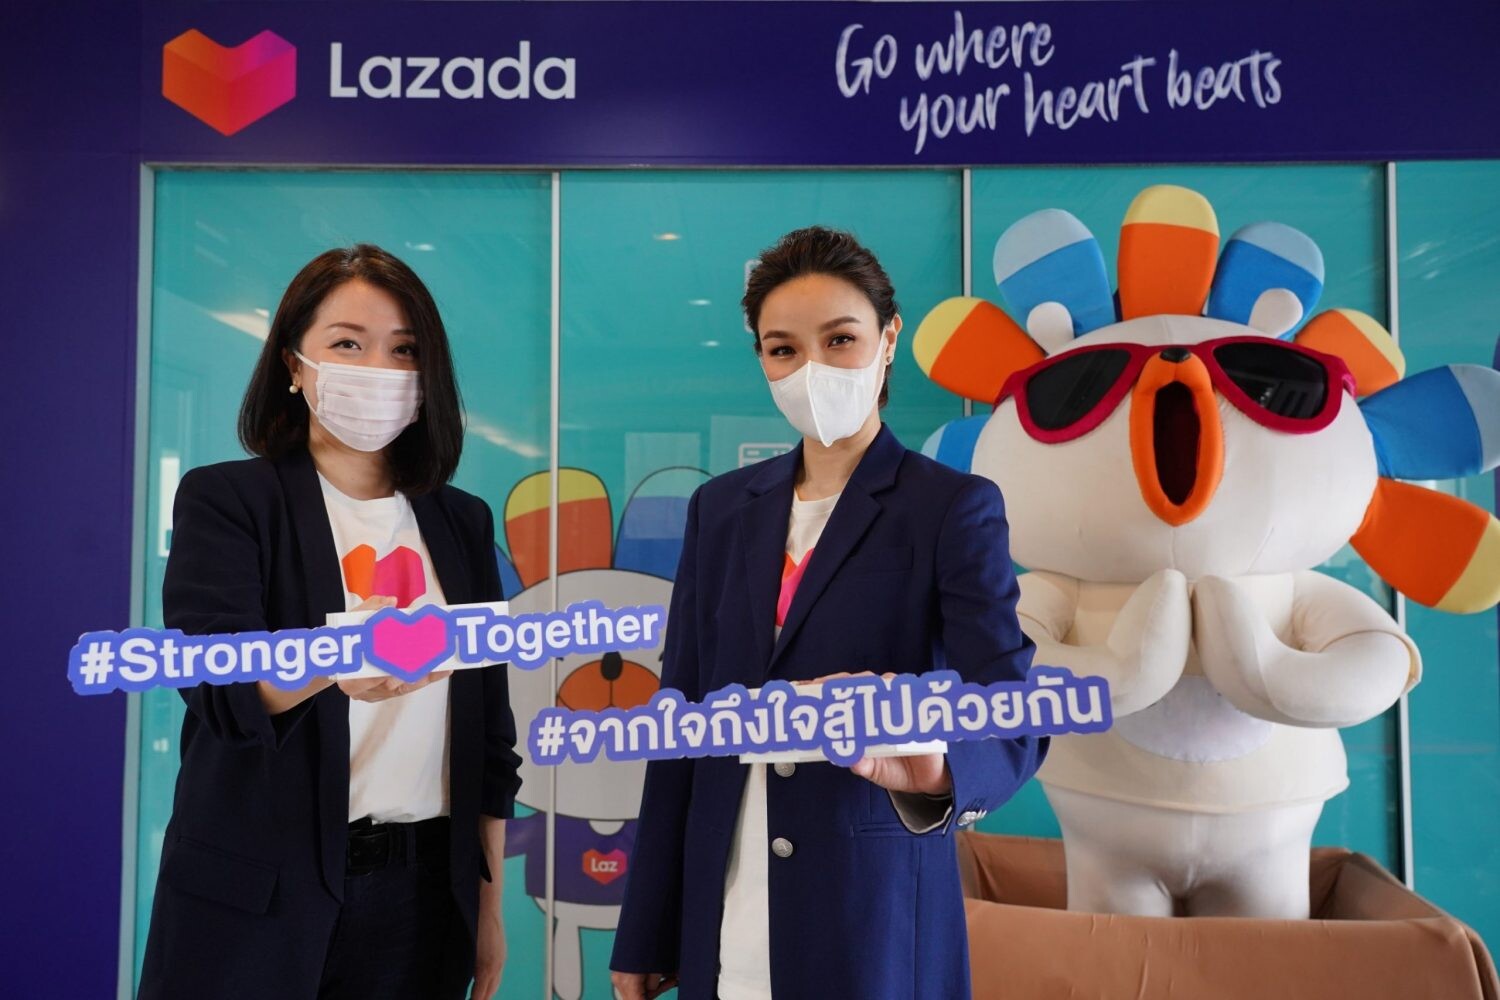 ลาซาด้าเคียงข้างคนไทยสู้ไปด้วยกัน ดัน SME ไทยสู้วิกฤต ประกาศแผนสนับสนุนธุรกิจและผู้บริโภคไทย ด้วยแพ็กเกจพิเศษ